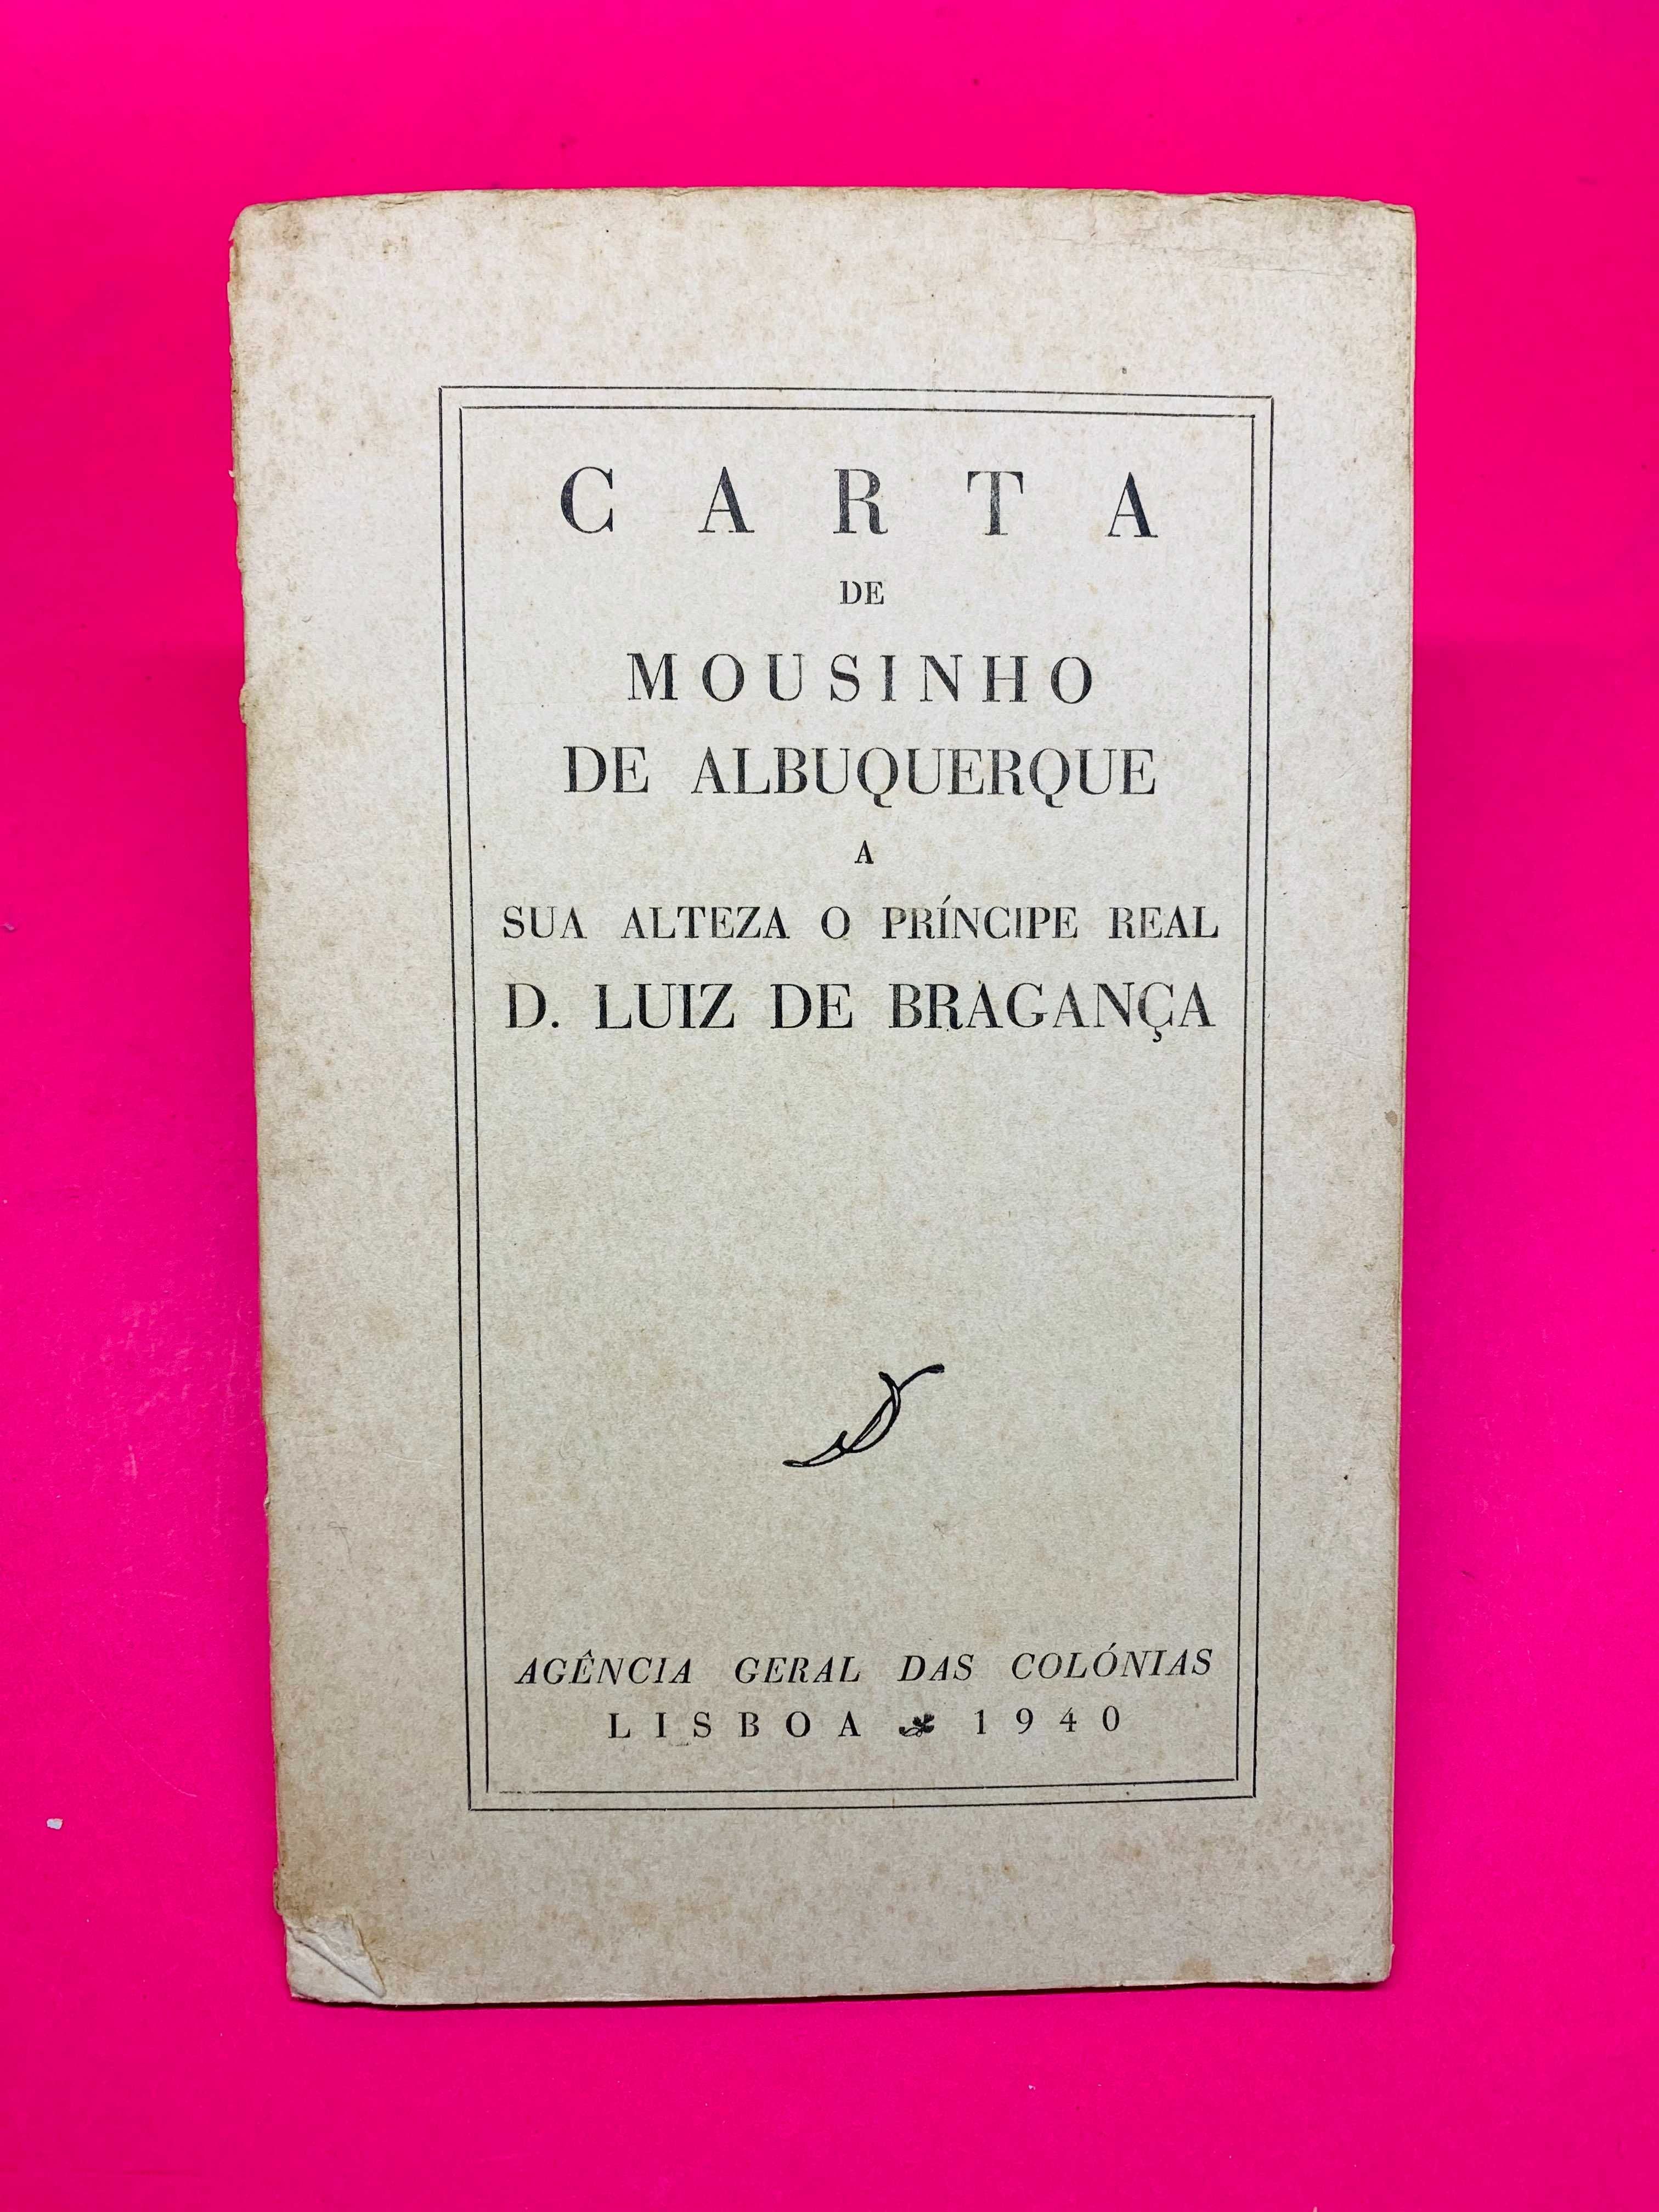 Carta de Mousinho de Albuquerque a D. Luiz de Bragança